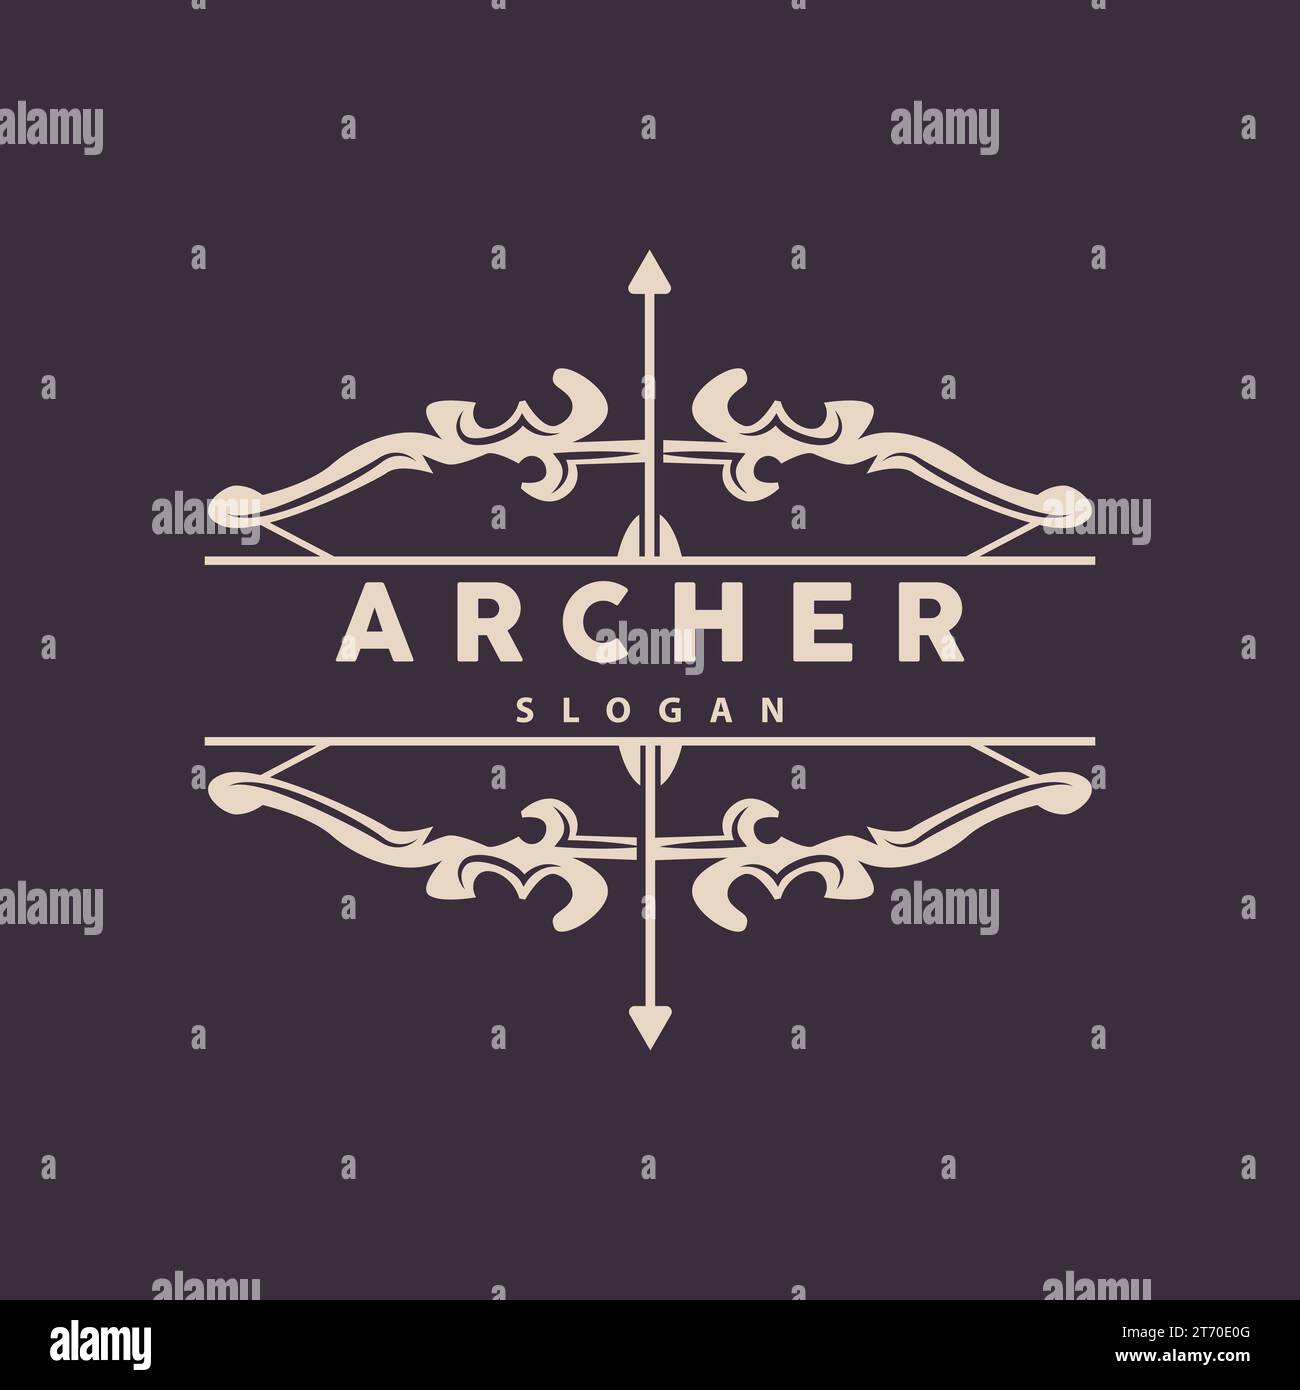 Logo Archer, Archery Arrow Vector, élégant design minimaliste simple, modèle d'illustration de symbole d'icône Illustration de Vecteur